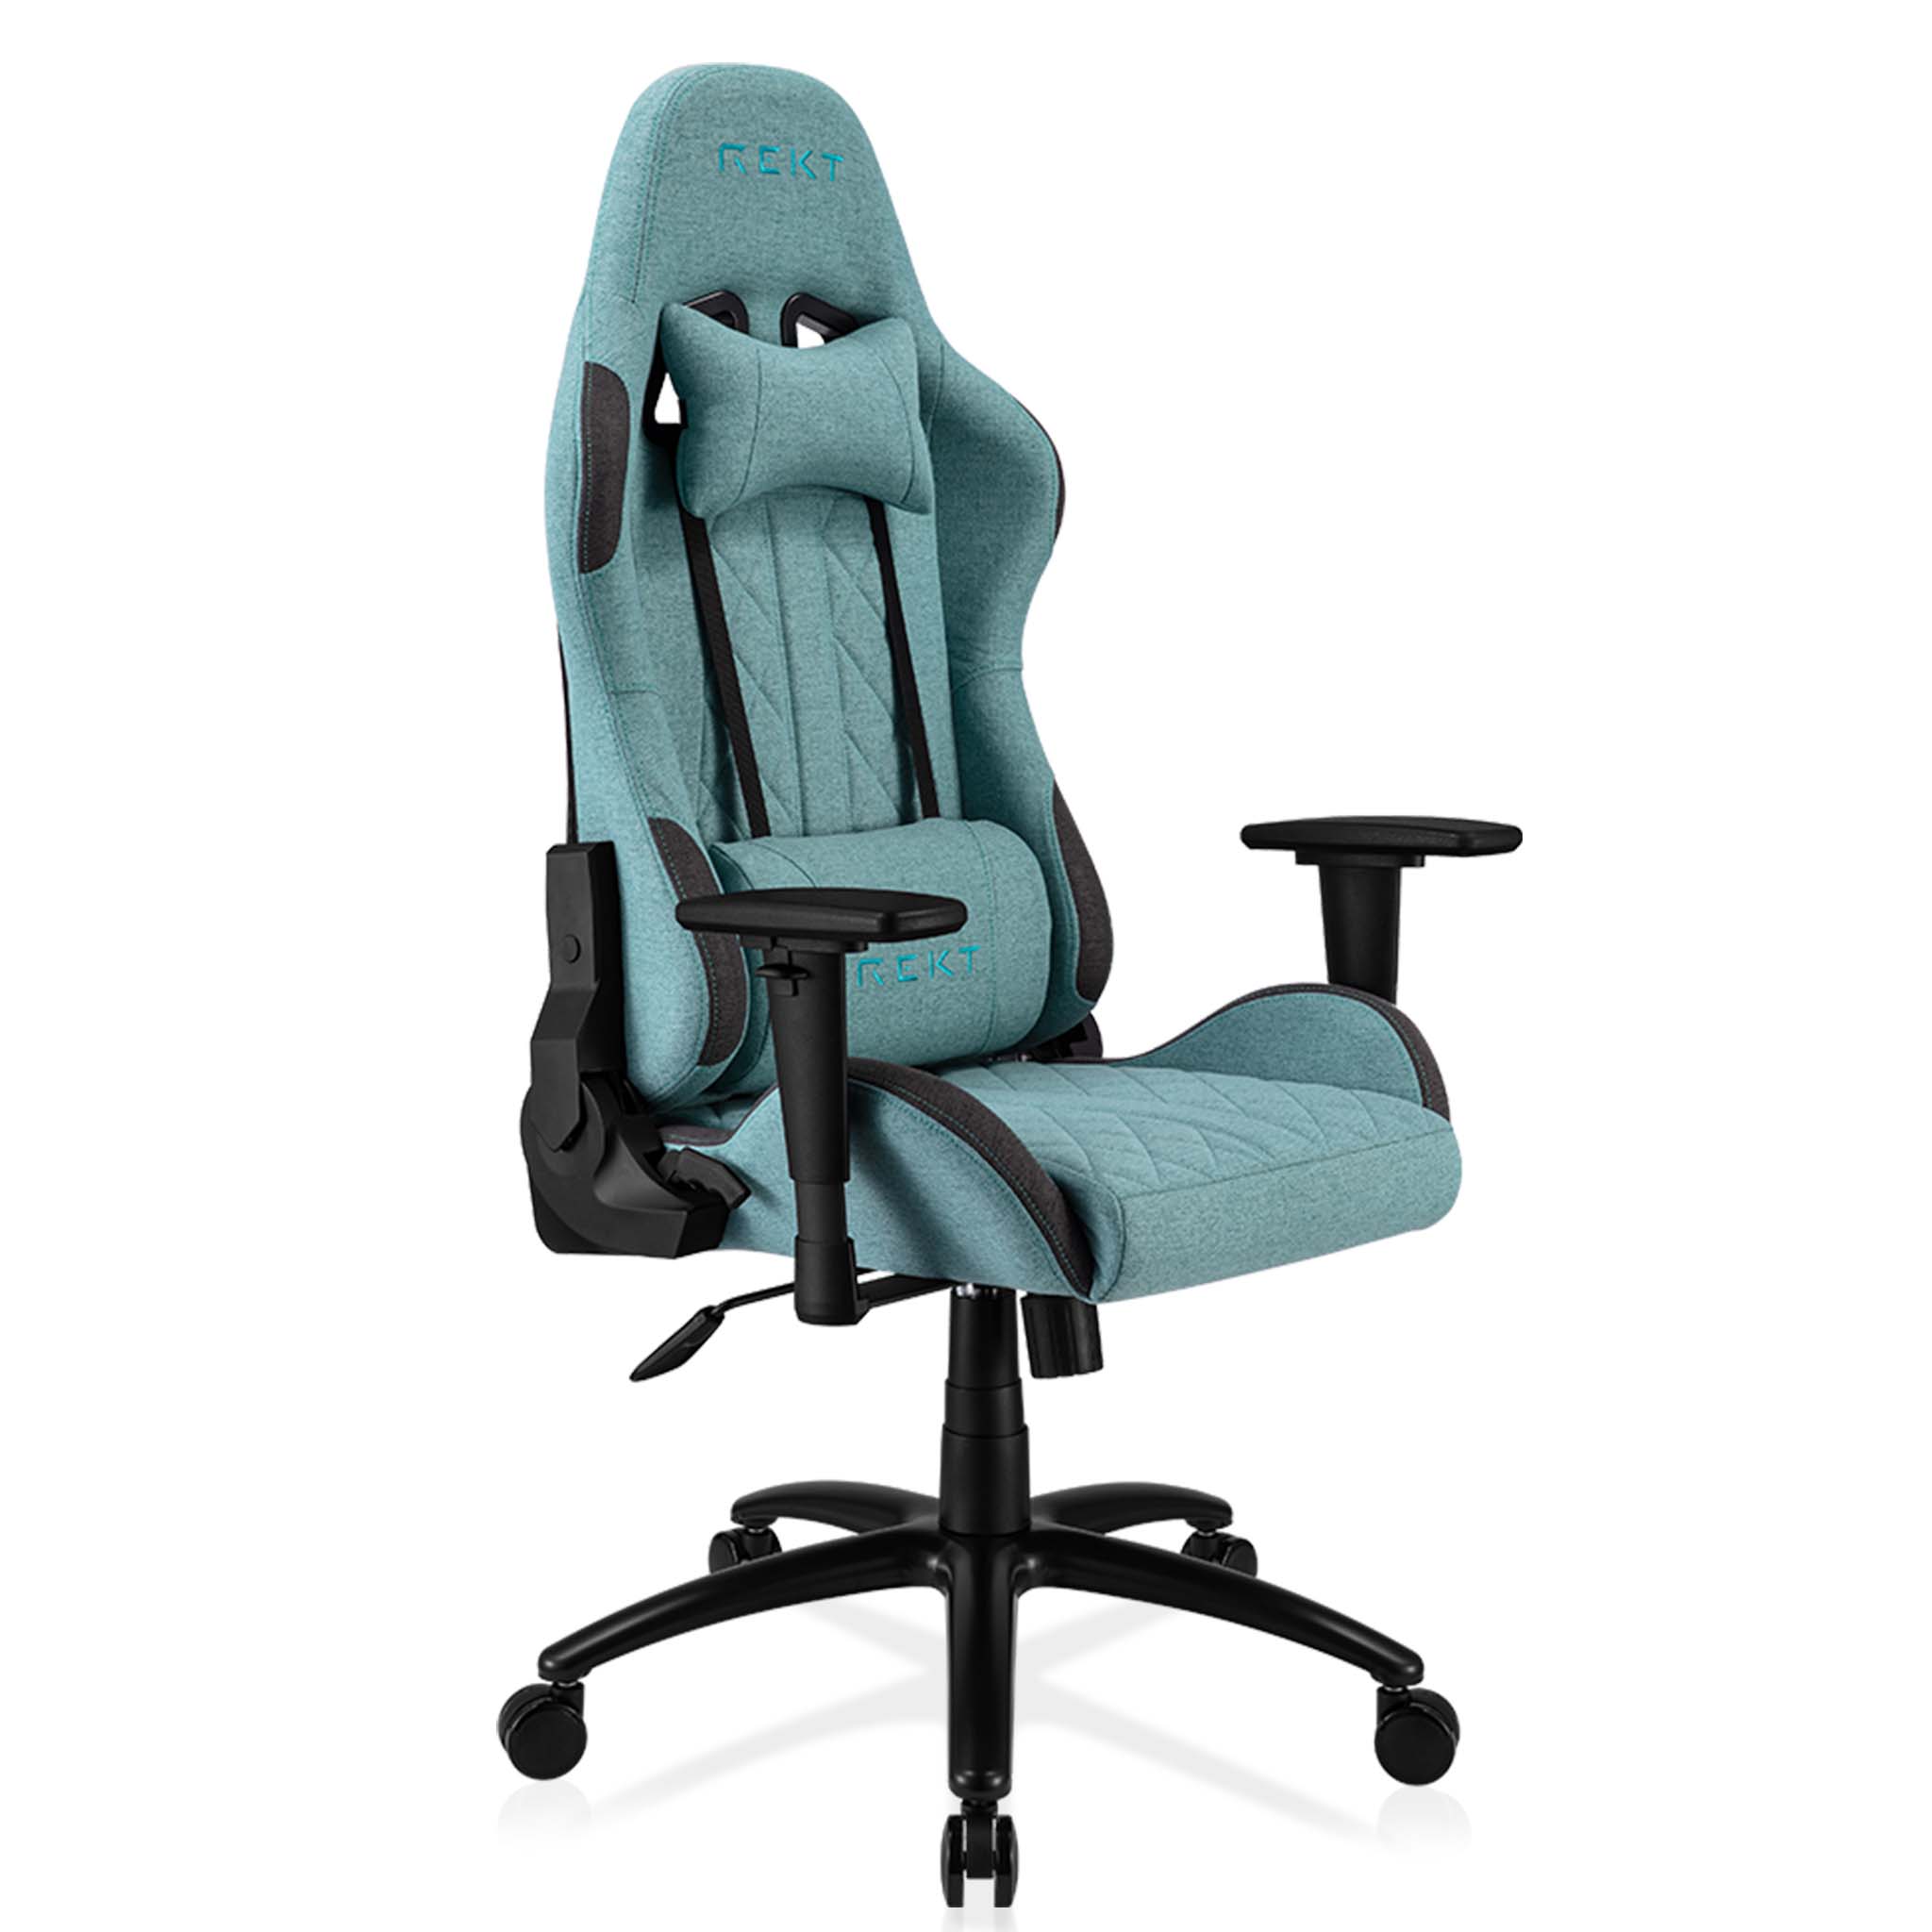 Chaise de bureau ergonomique REKT® RGo - REKT